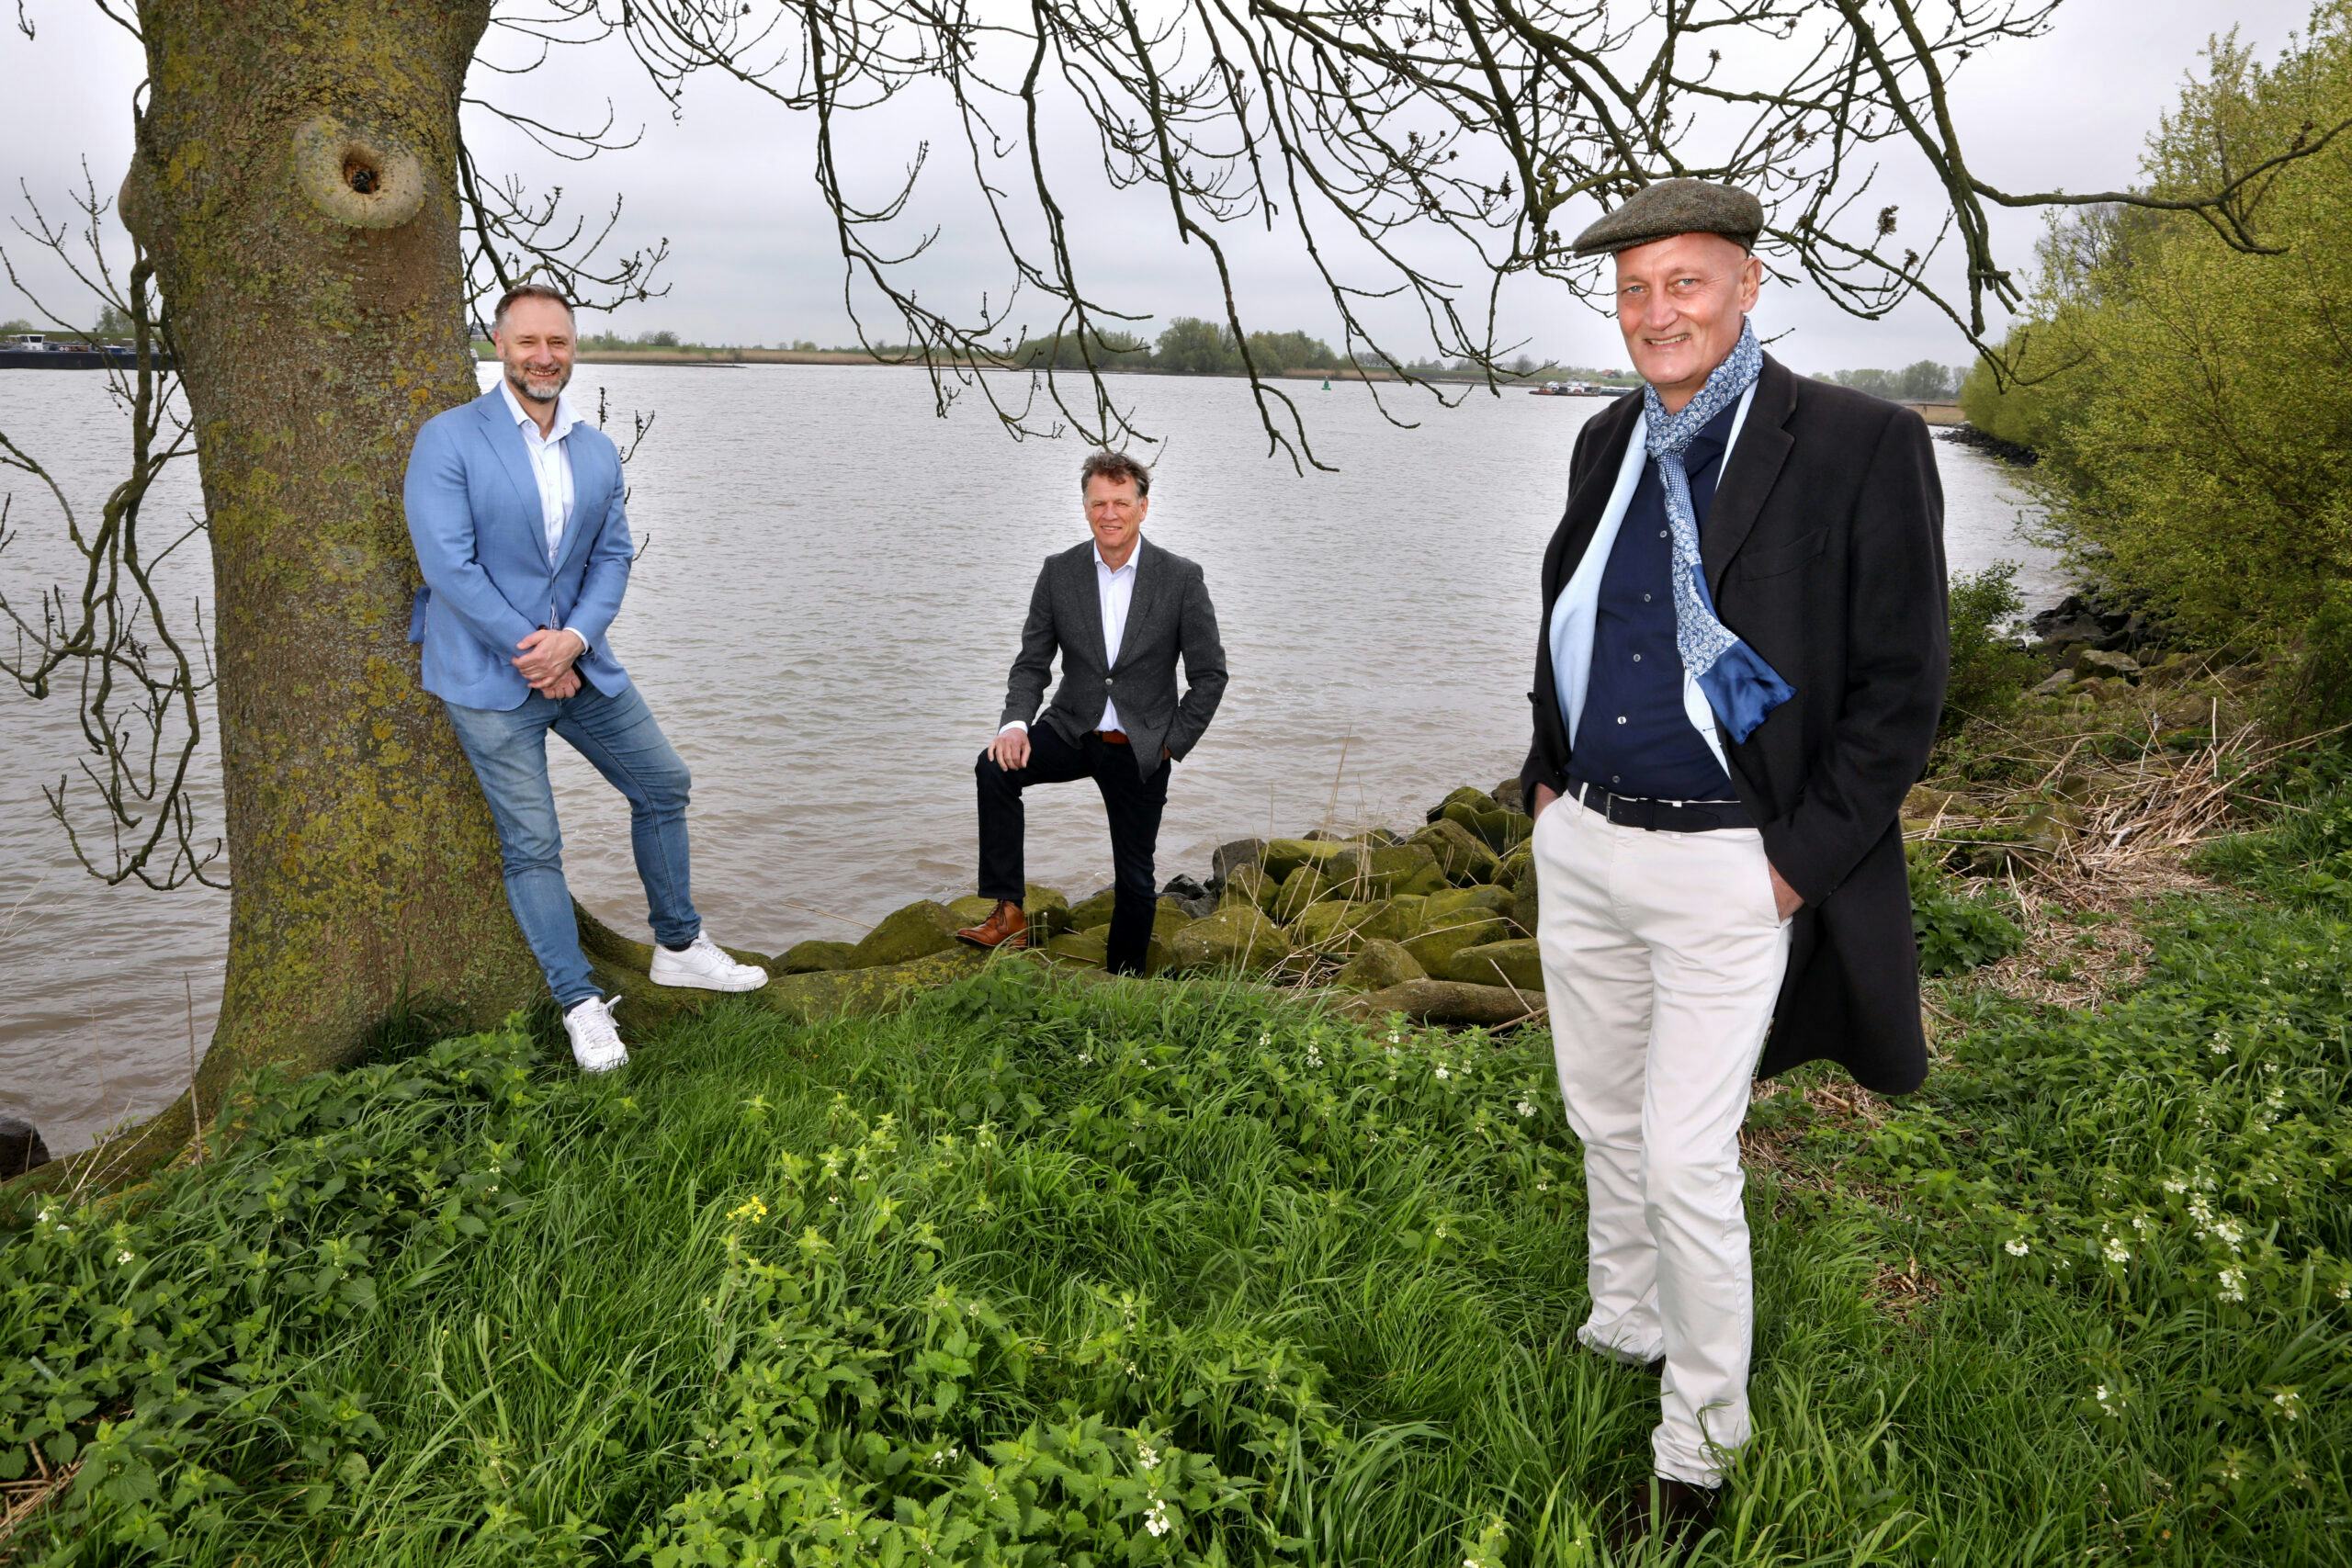 Vlnr: Rimco de Groot, Jan Paul van den Bosch en bestuursvoorzitter Kees Jan Mourik.
Foto: Stijn Rademaker